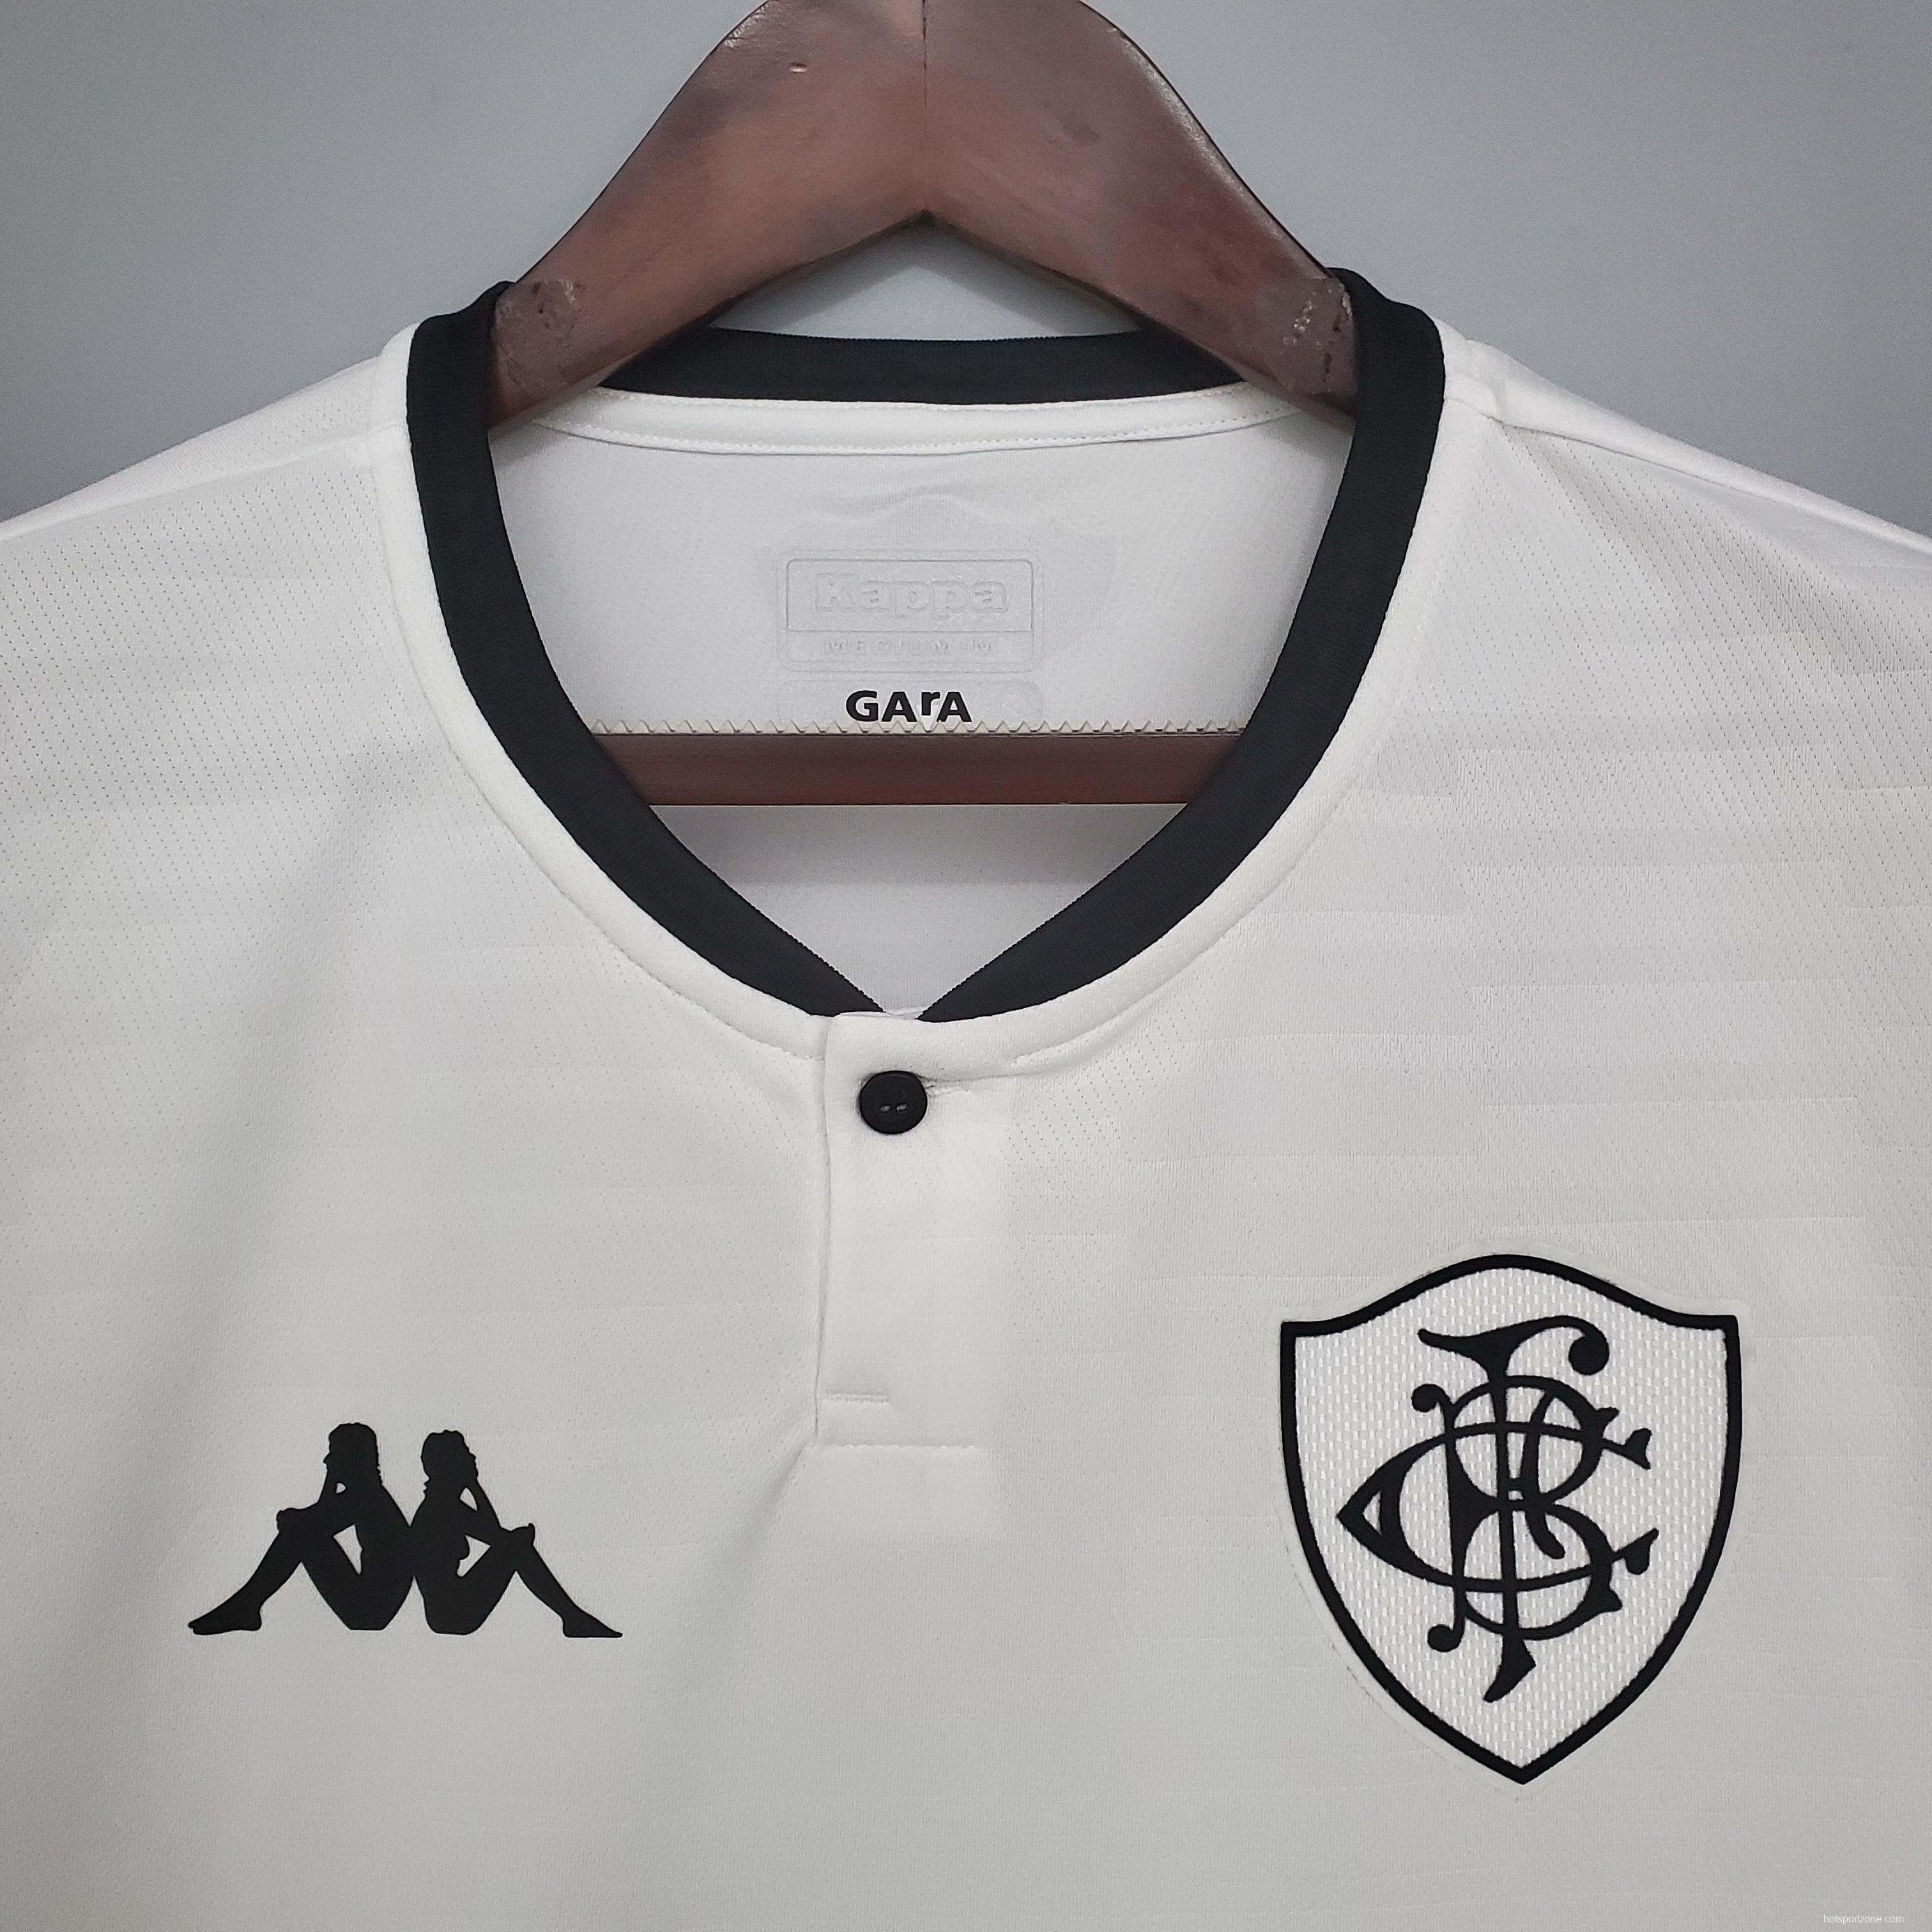 2021 Botafogo third away white Soccer Jersey